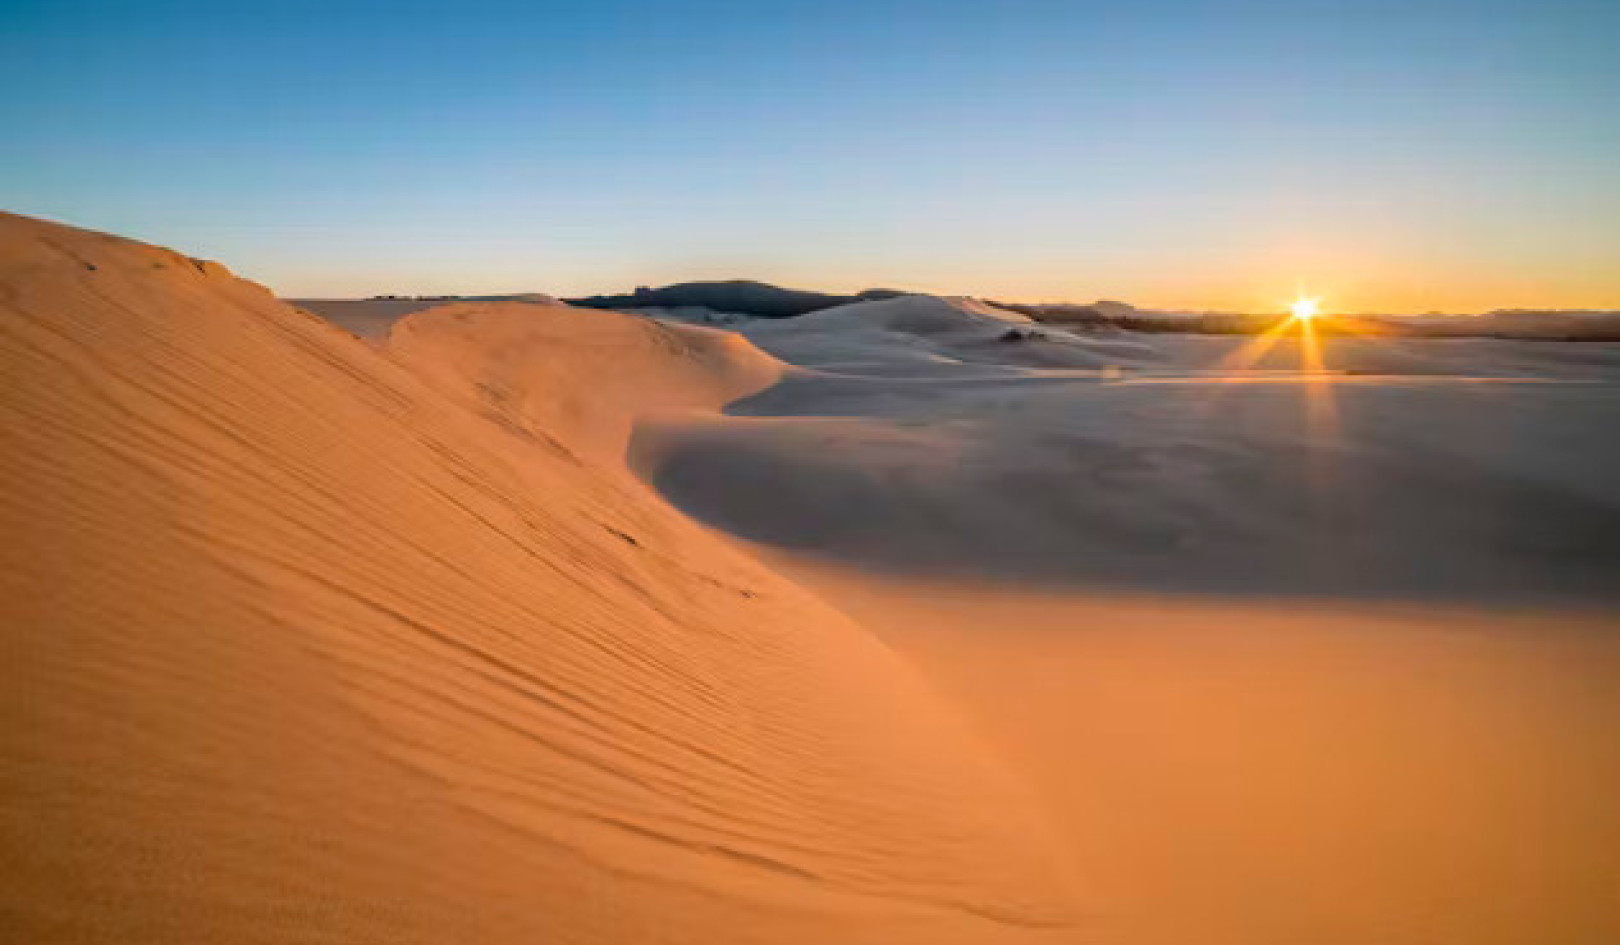 Kuinka Dune muokkasi ympäristöliikkeiden ja ekologian tulevaisuutta